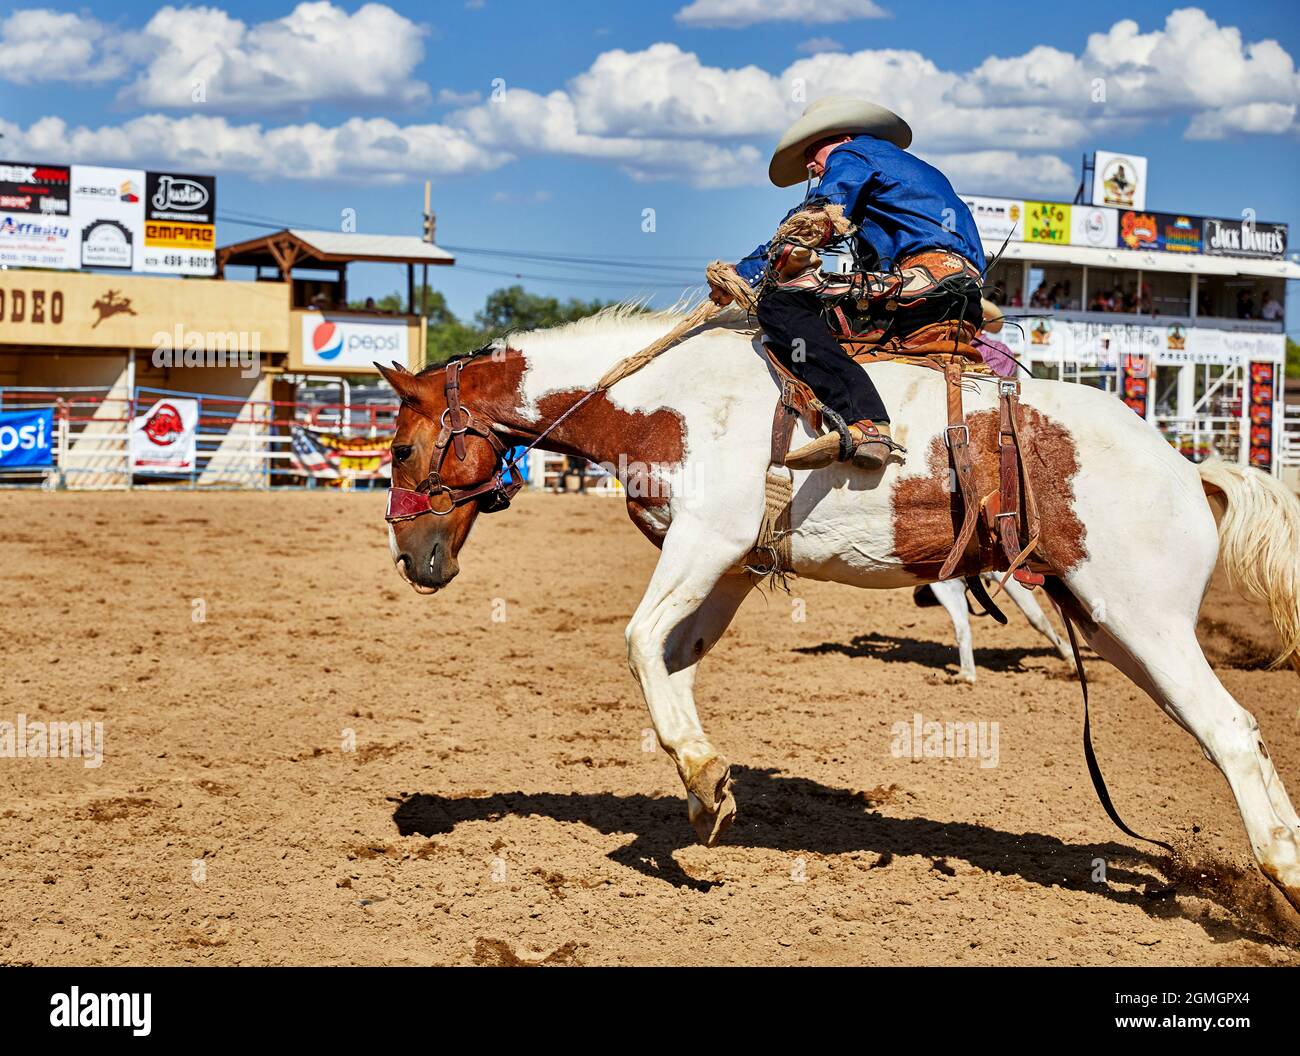 Prescott, Arizona, EE.UU. - 12 de septiembre de 2021: Vaquero montando a caballo en el rodeo que se celebra en el recinto ferial de Prescott Rodeo durante Foto de stock